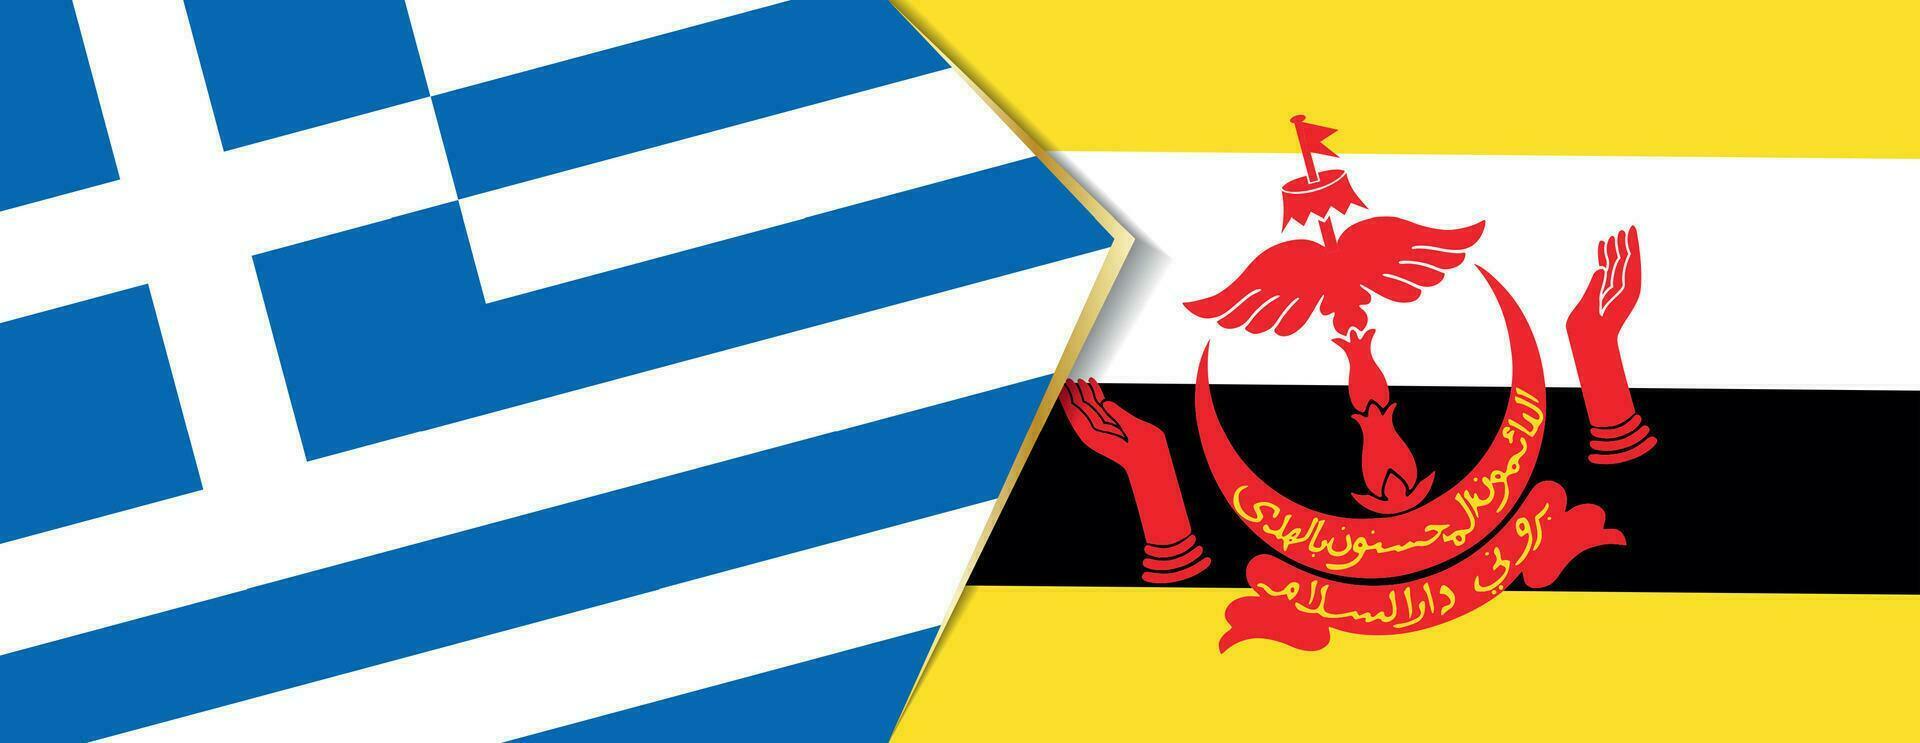 Grecia y Brunei banderas, dos vector banderas